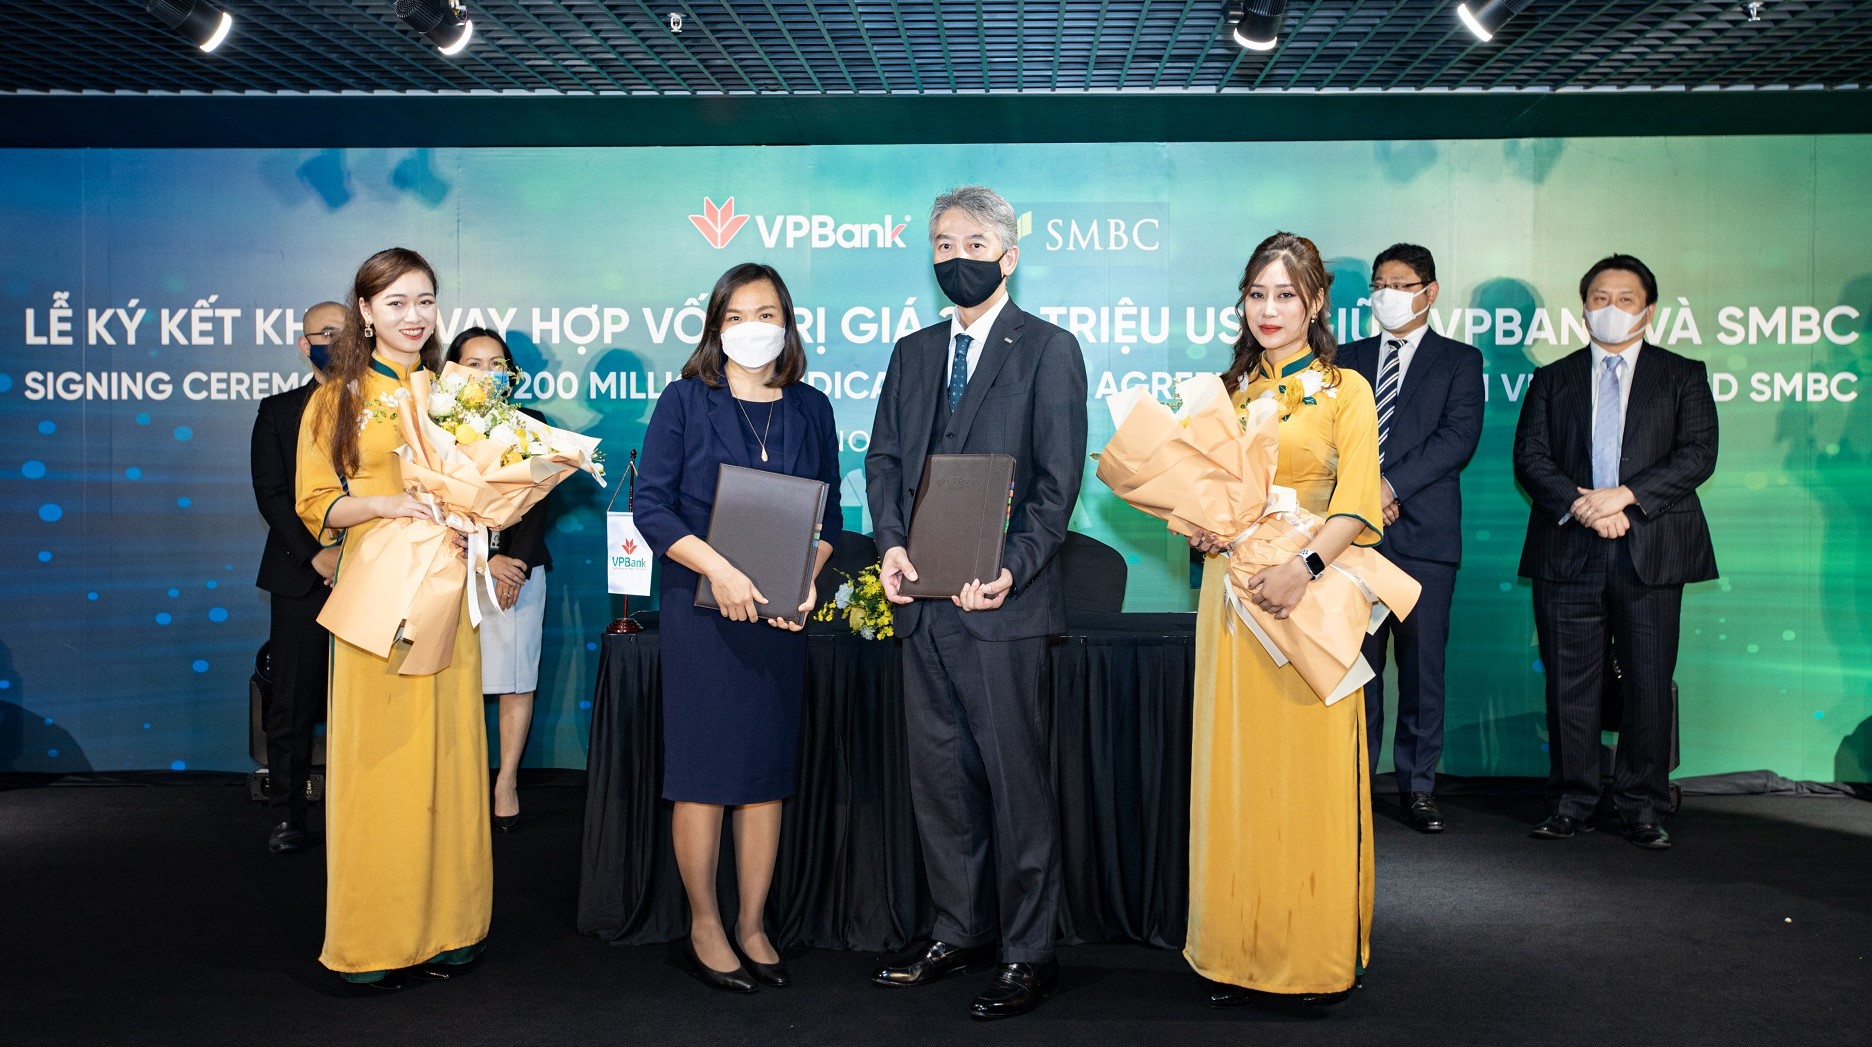 VPBank và SMBC tiếp tục ký kết thỏa thuận khoản vay hợp vốn trị giá 200 triệu USD - Ảnh 1.